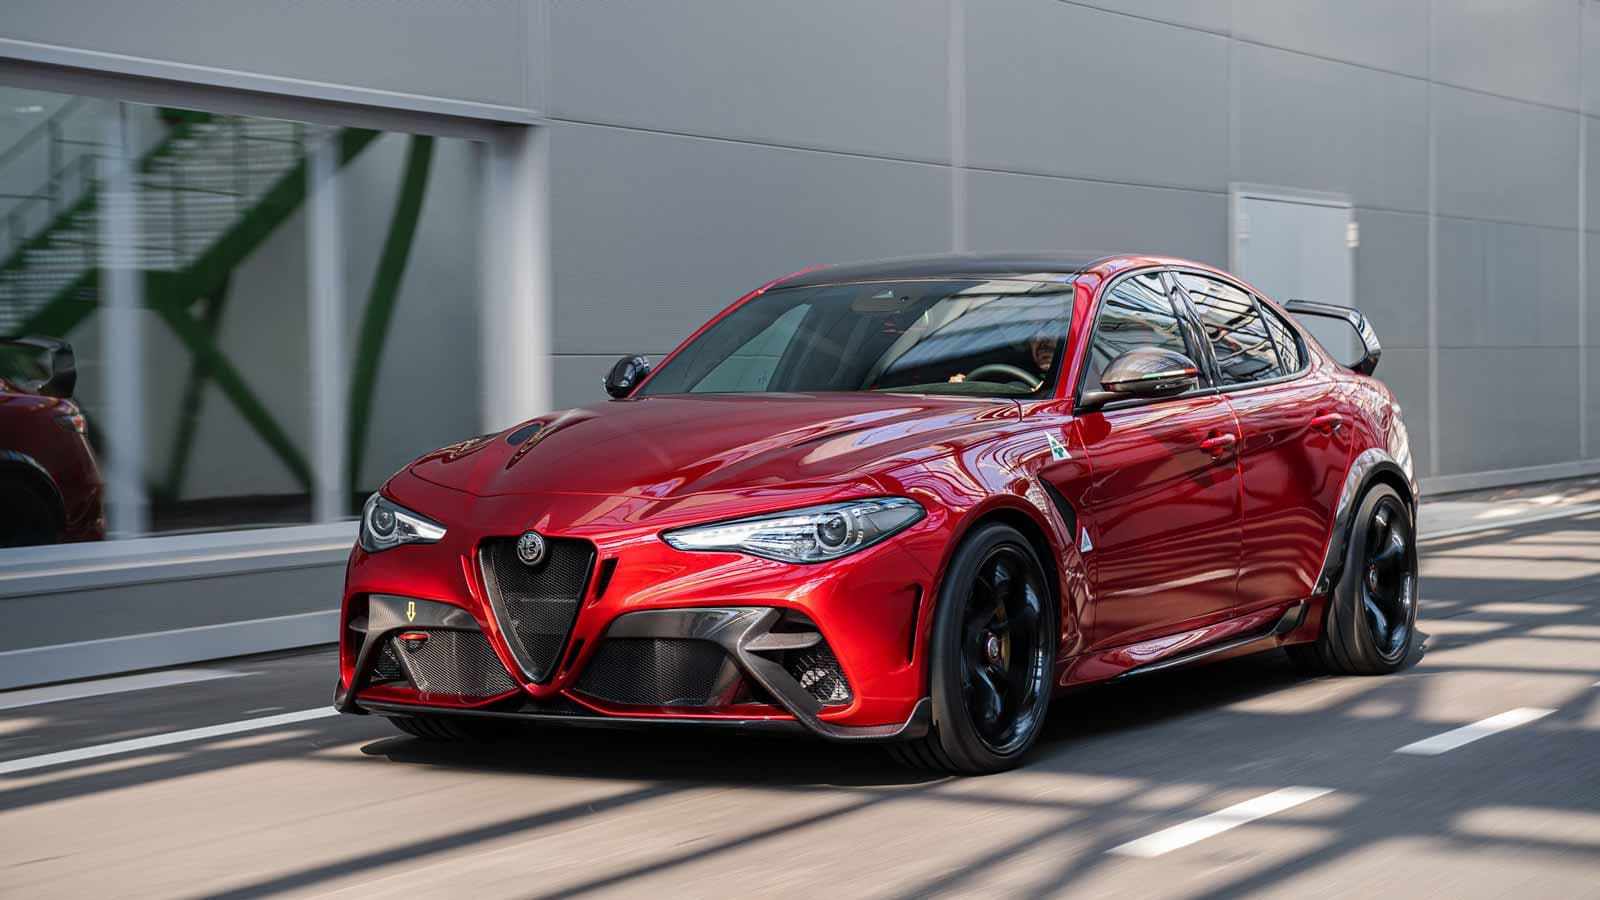 Alfa Romeo giới thiệu “di sản tốc độ” Giulia GTA mới – tăng tốc từ 0-100 km/h chỉ trong 3,6 giây